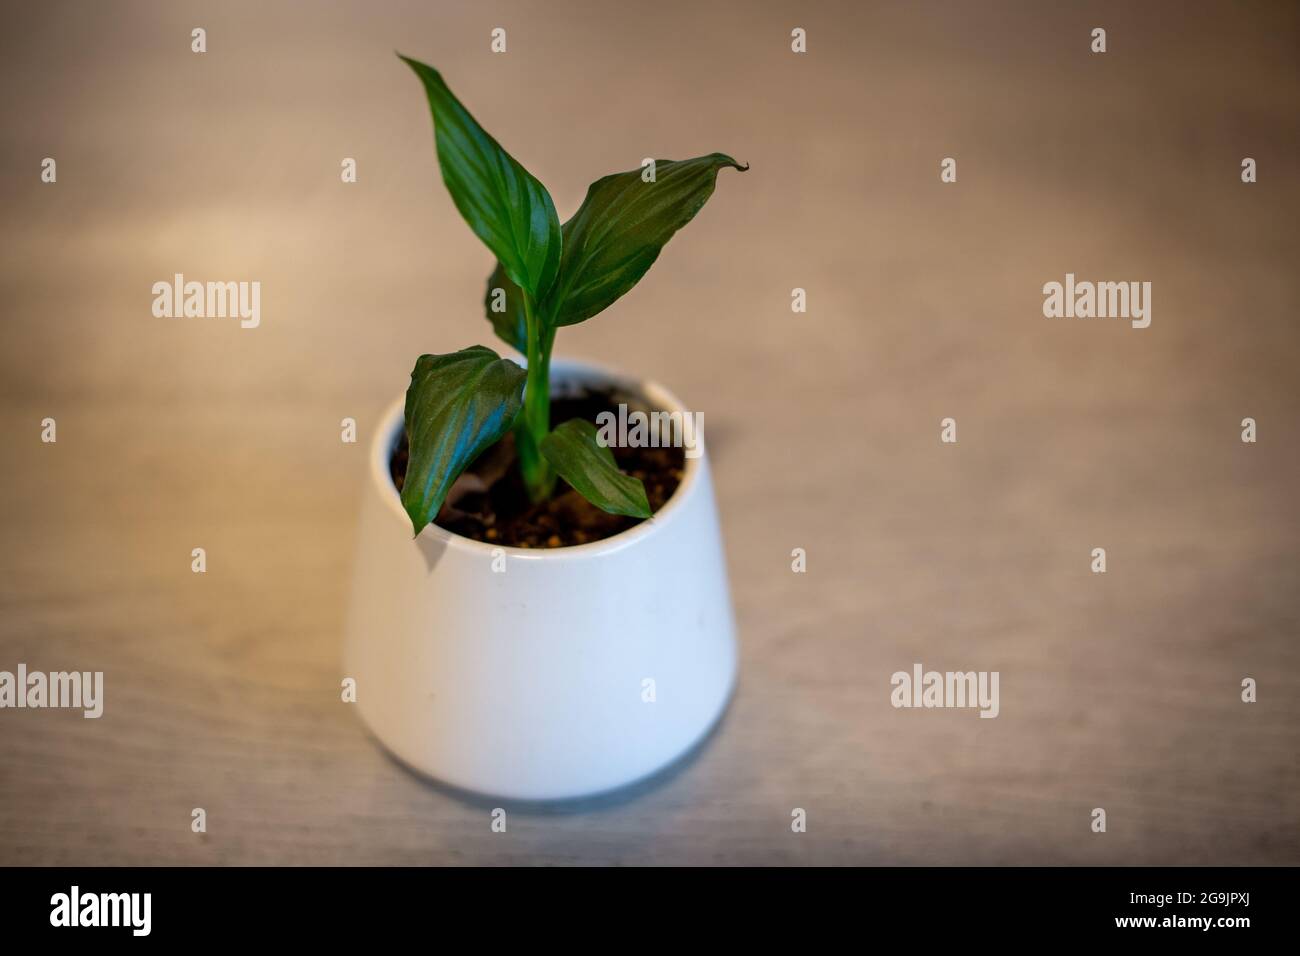 Un bébé spathiphyllum, ou nénuphars de paix, qui grandit dans un pot blanc et sera une plante maison idéale avec des fleurs blanches Banque D'Images